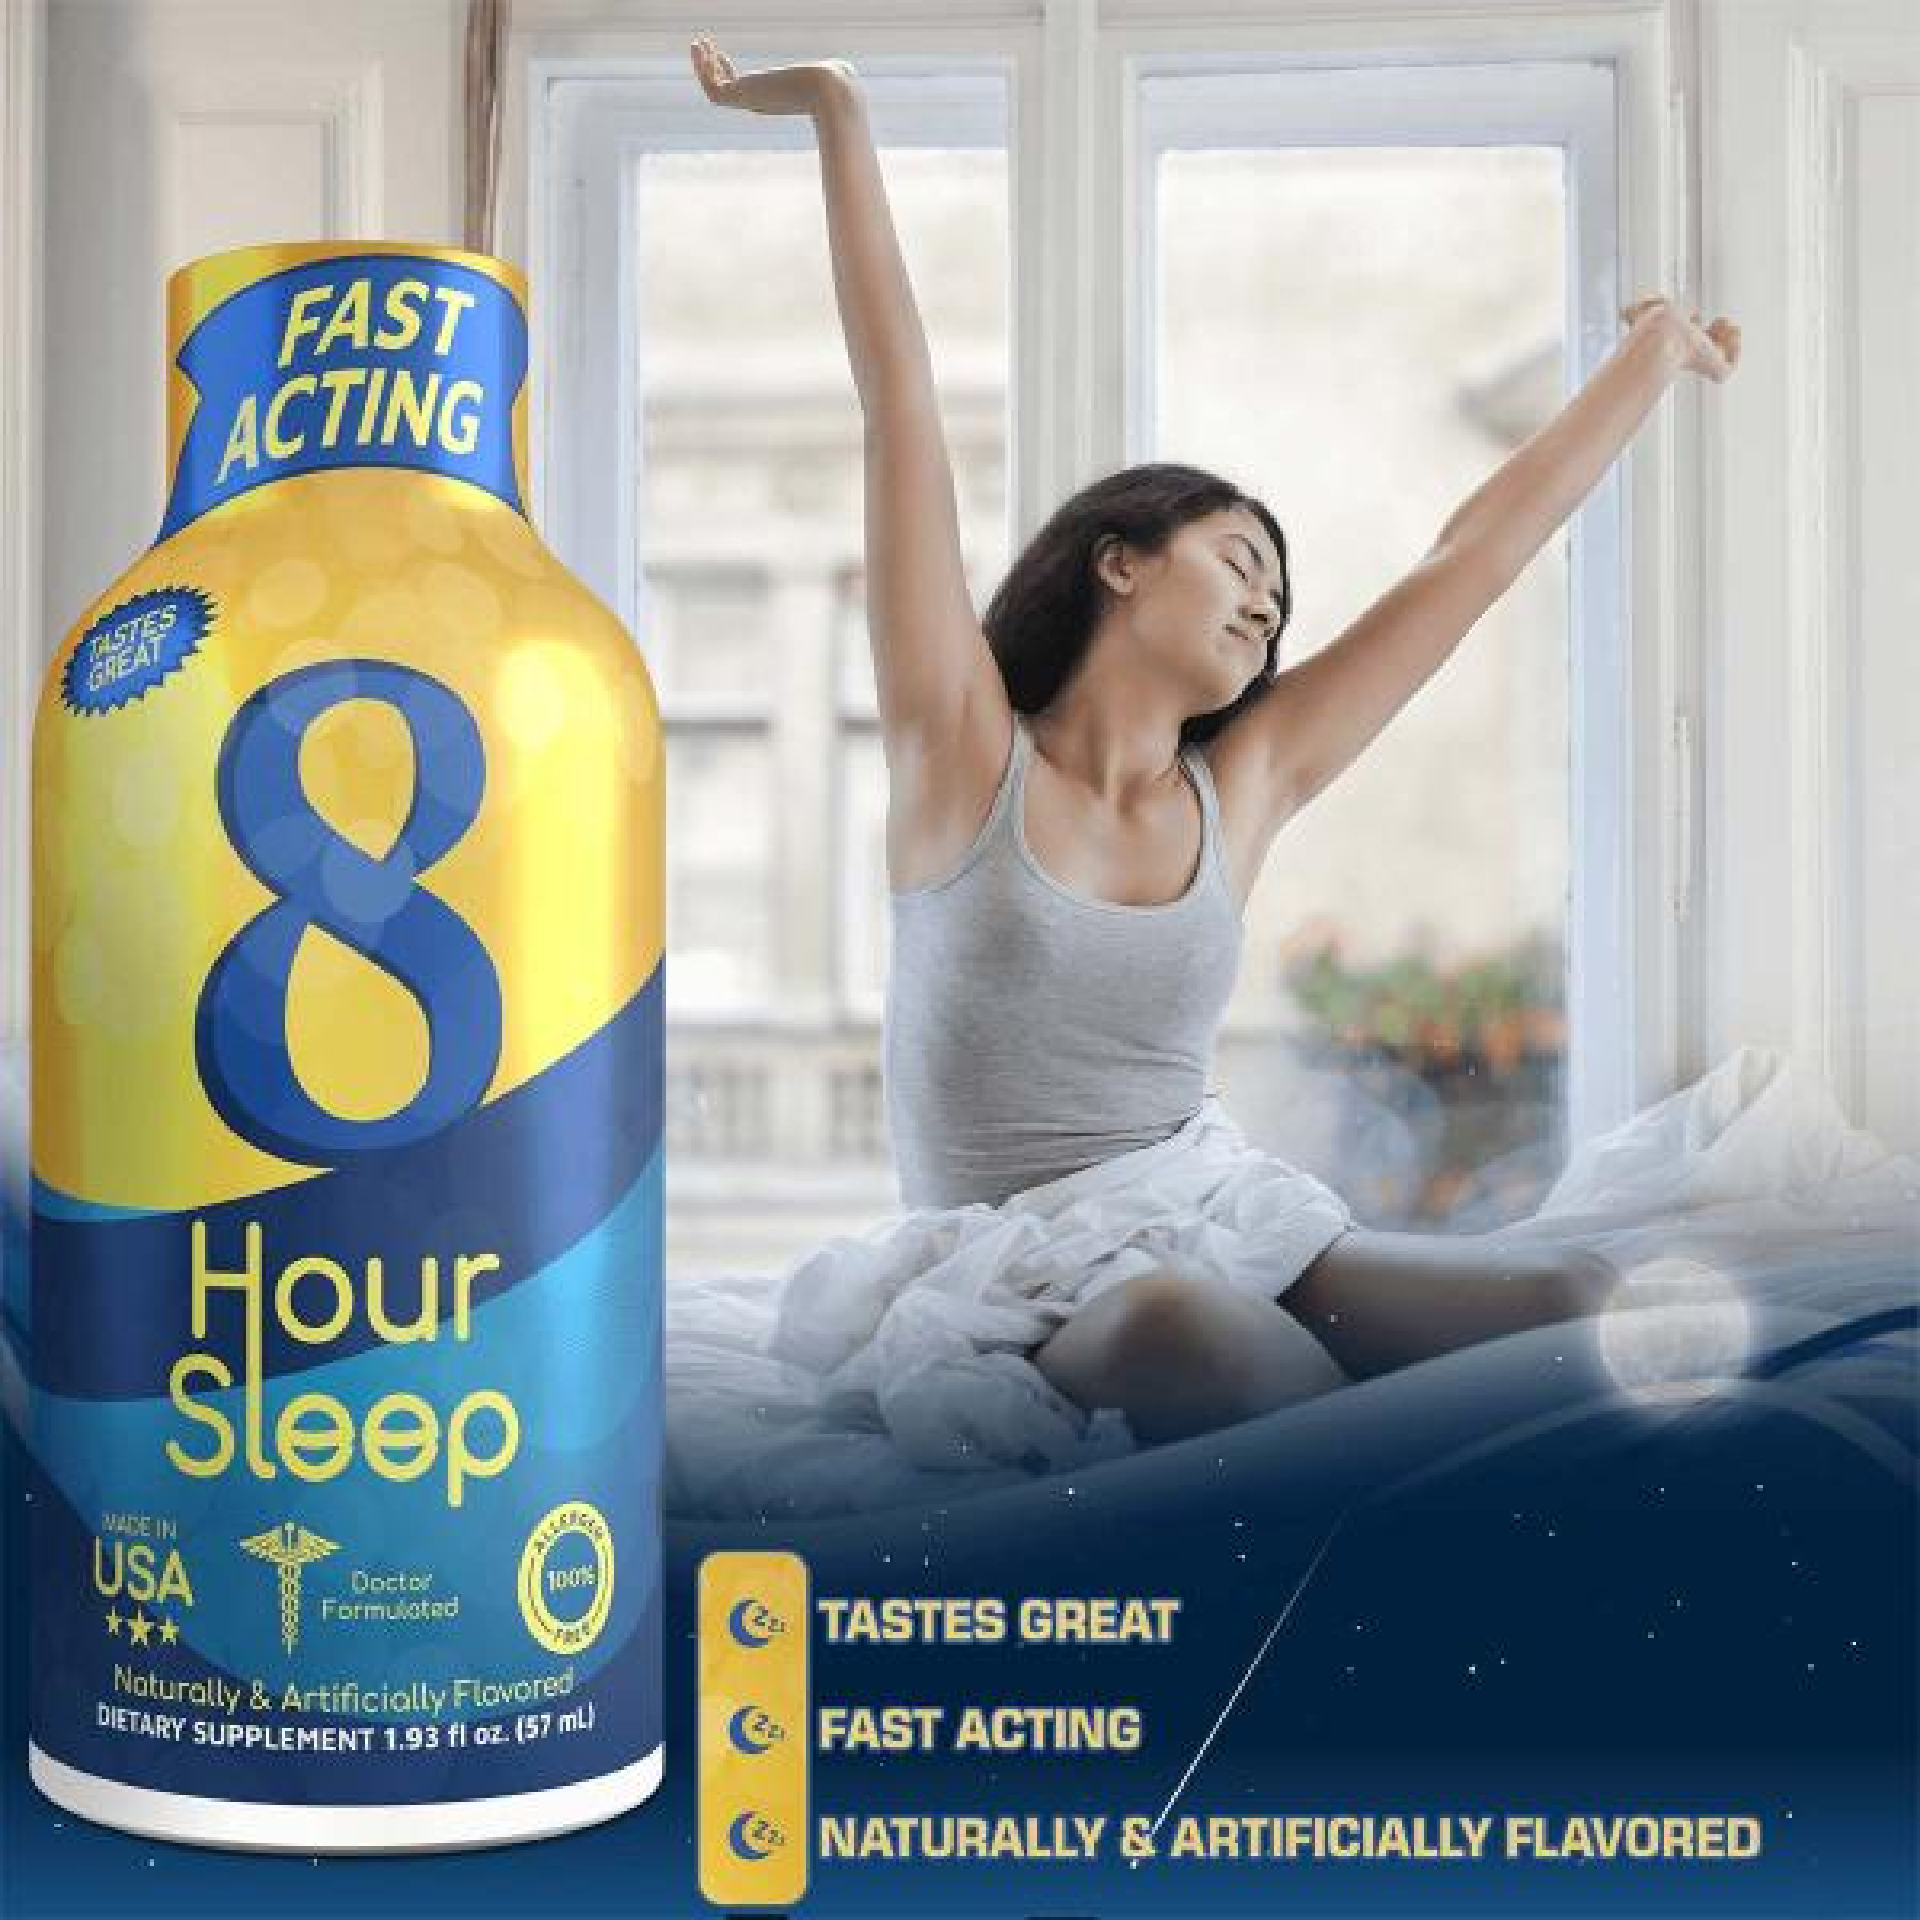 8-Hour Sleep